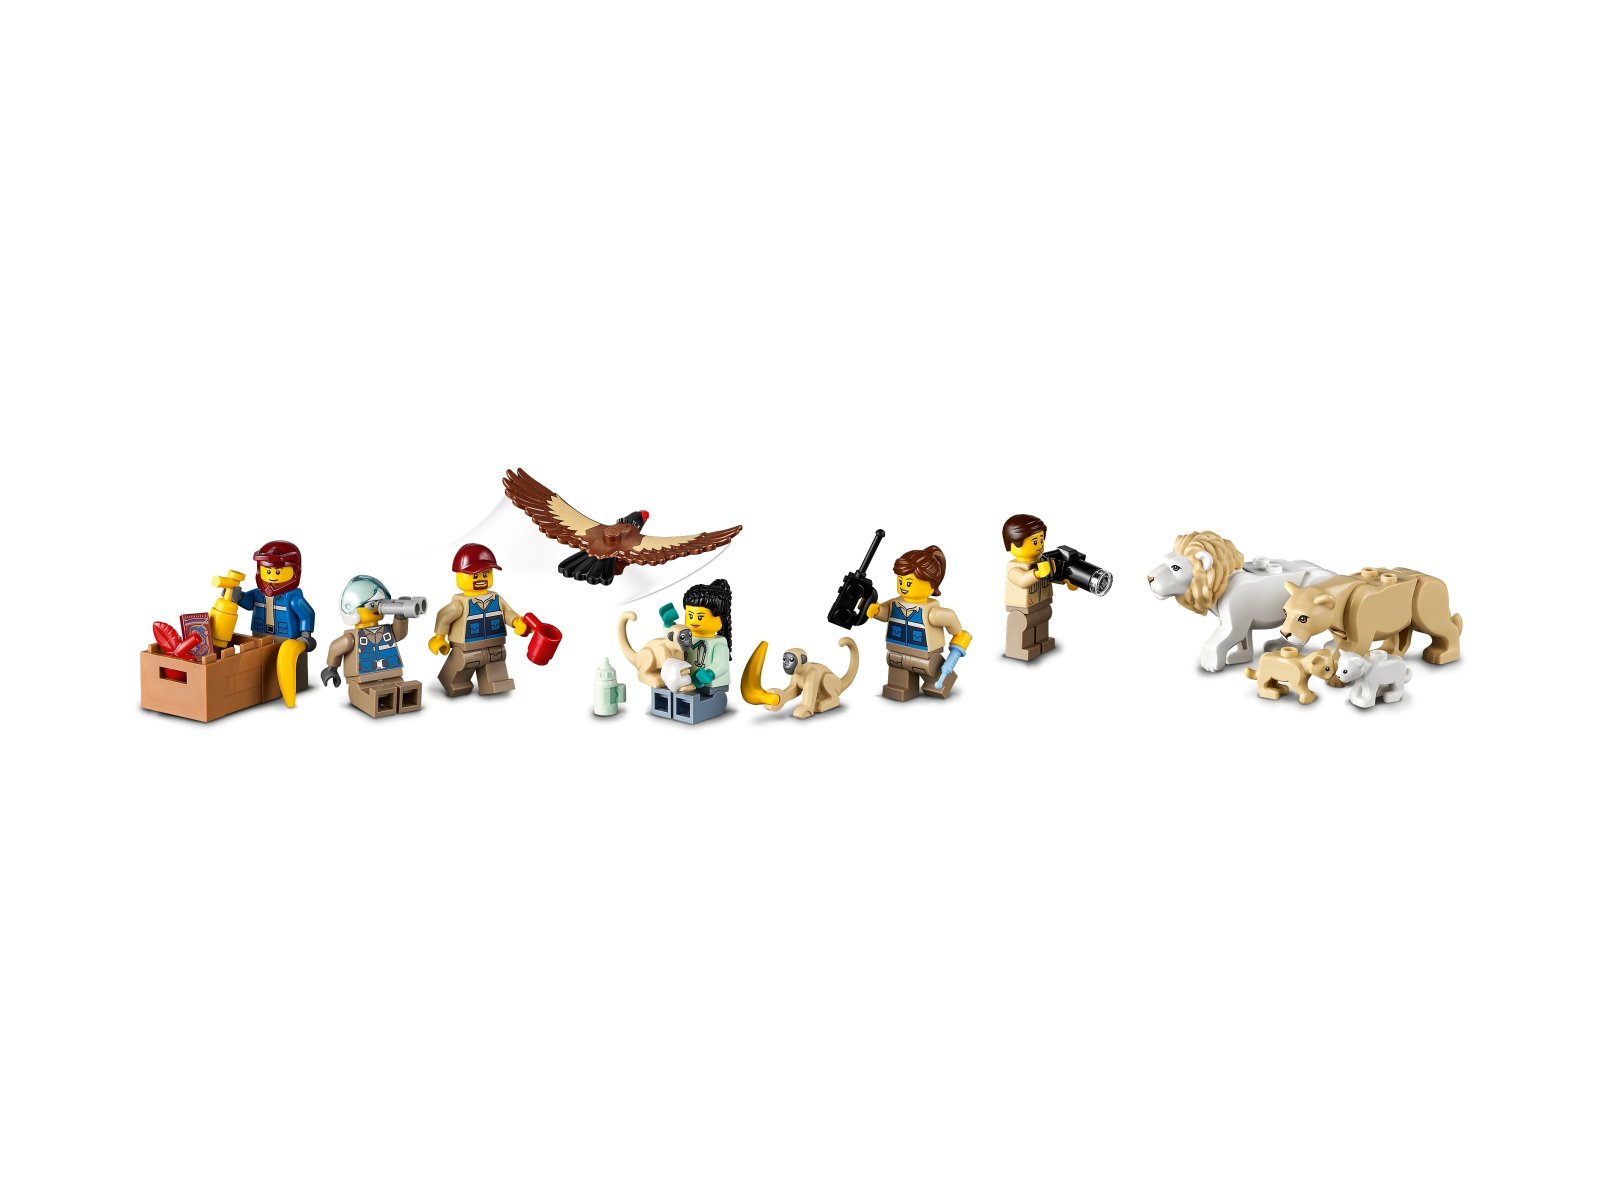 LEGO City Obóz ratowników dzikich zwierząt 60307